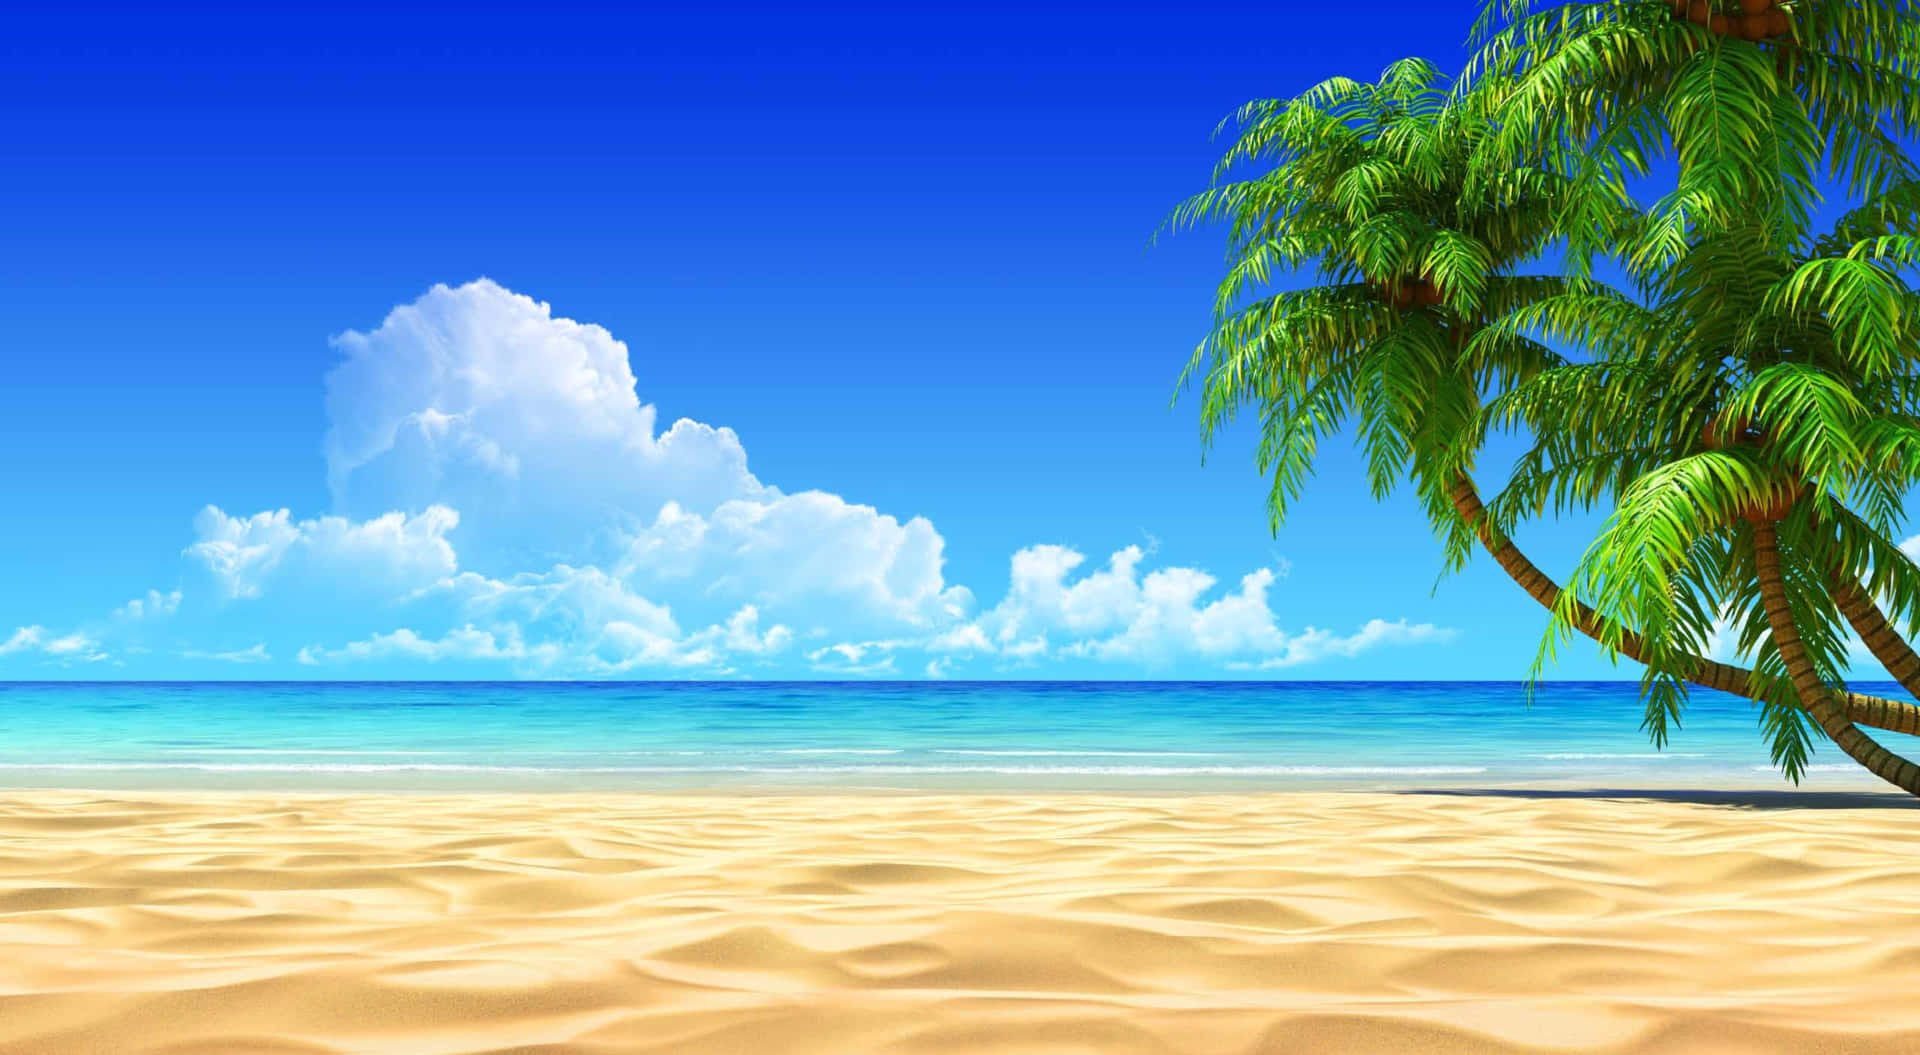 Sumérgeteen Una Ola De Relajación En Esta Playa En 4k